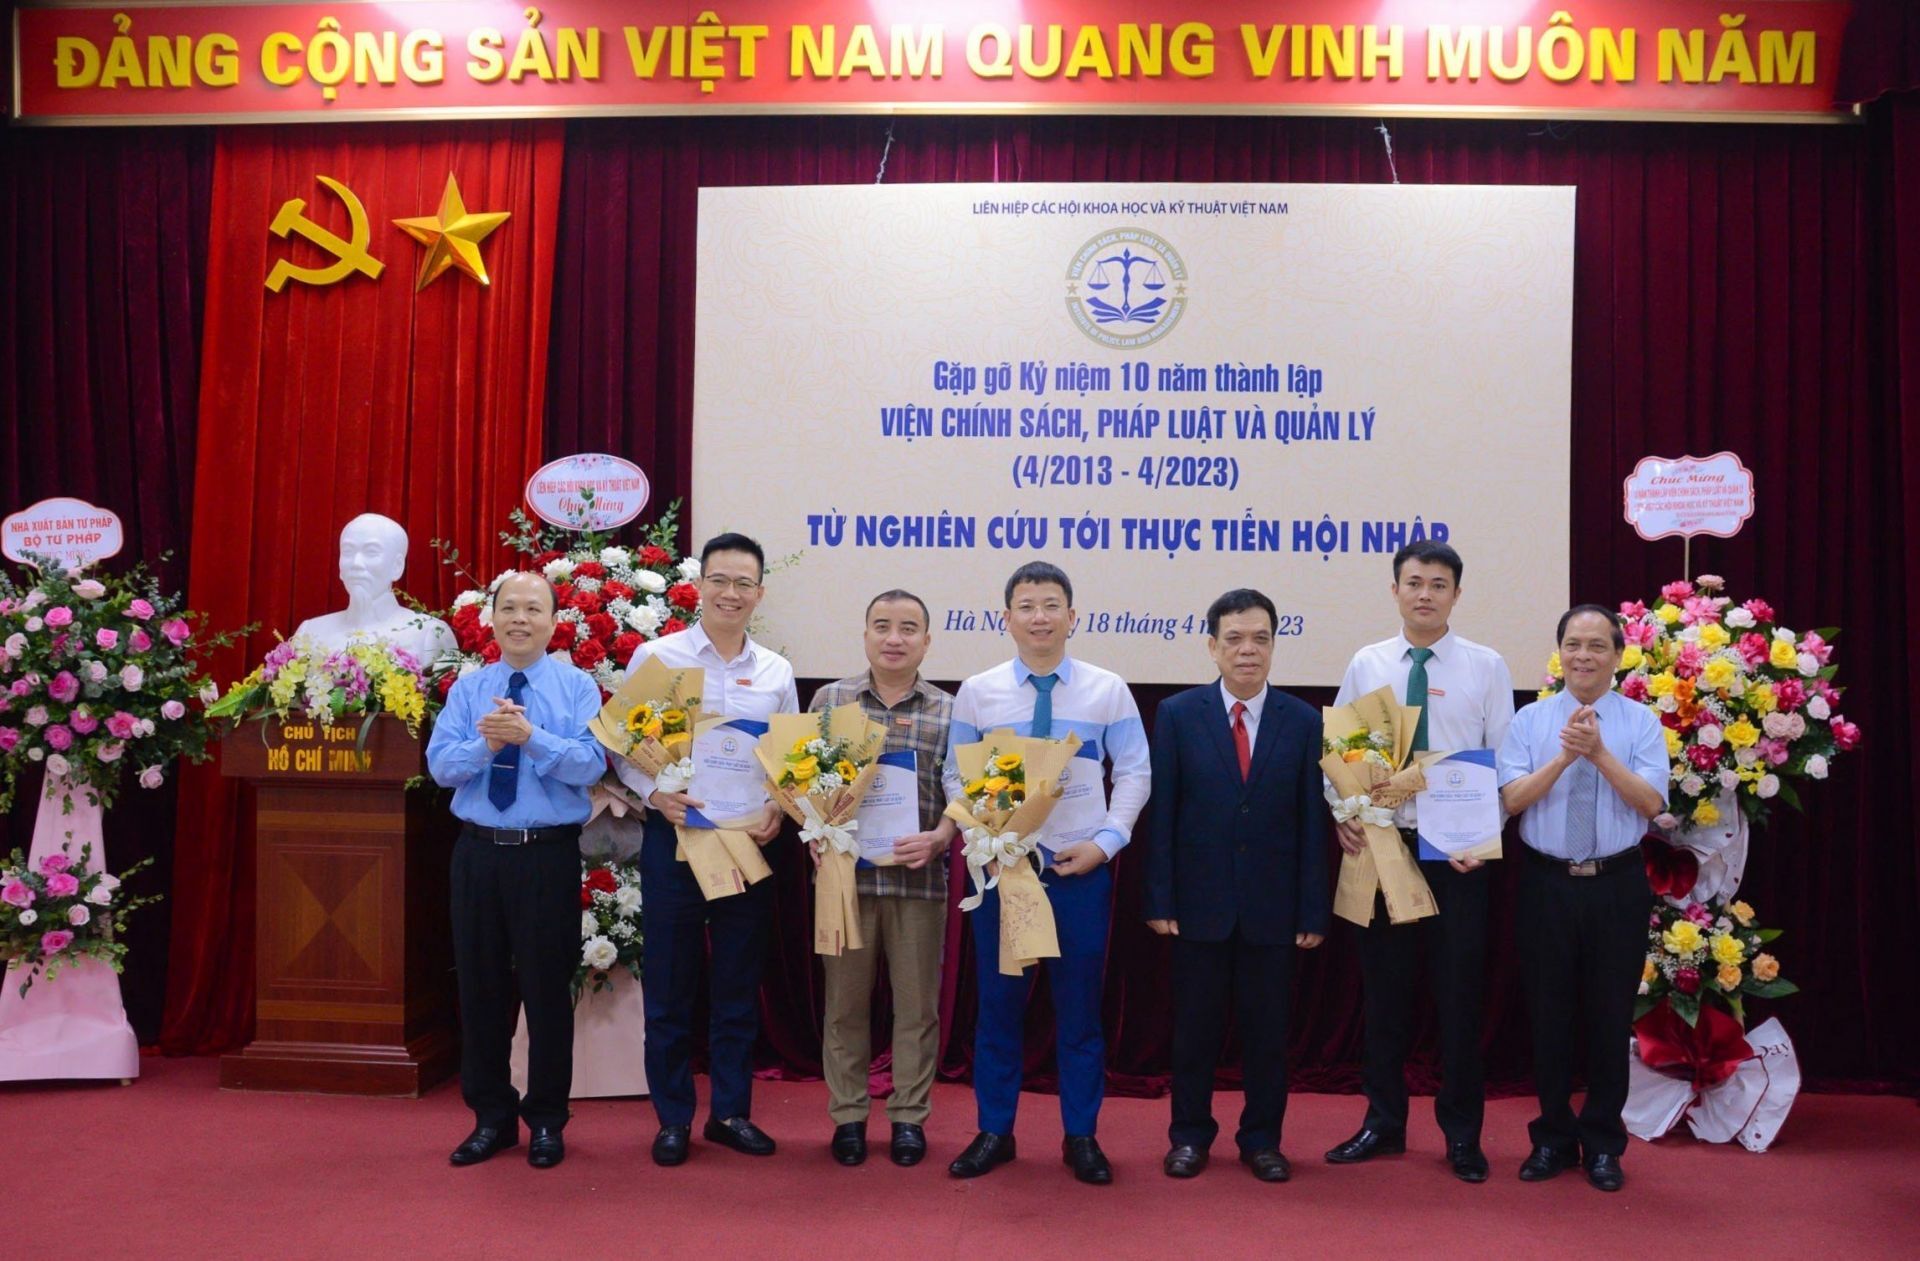 Lãnh đạo Viện trao Quyết định bổ nhiệm cho 4 cán bộ giữ các cương vị lãnh đạo Tạp chí Việt Nam Hội nhập và các đơn vị trực thuộc của Viện.